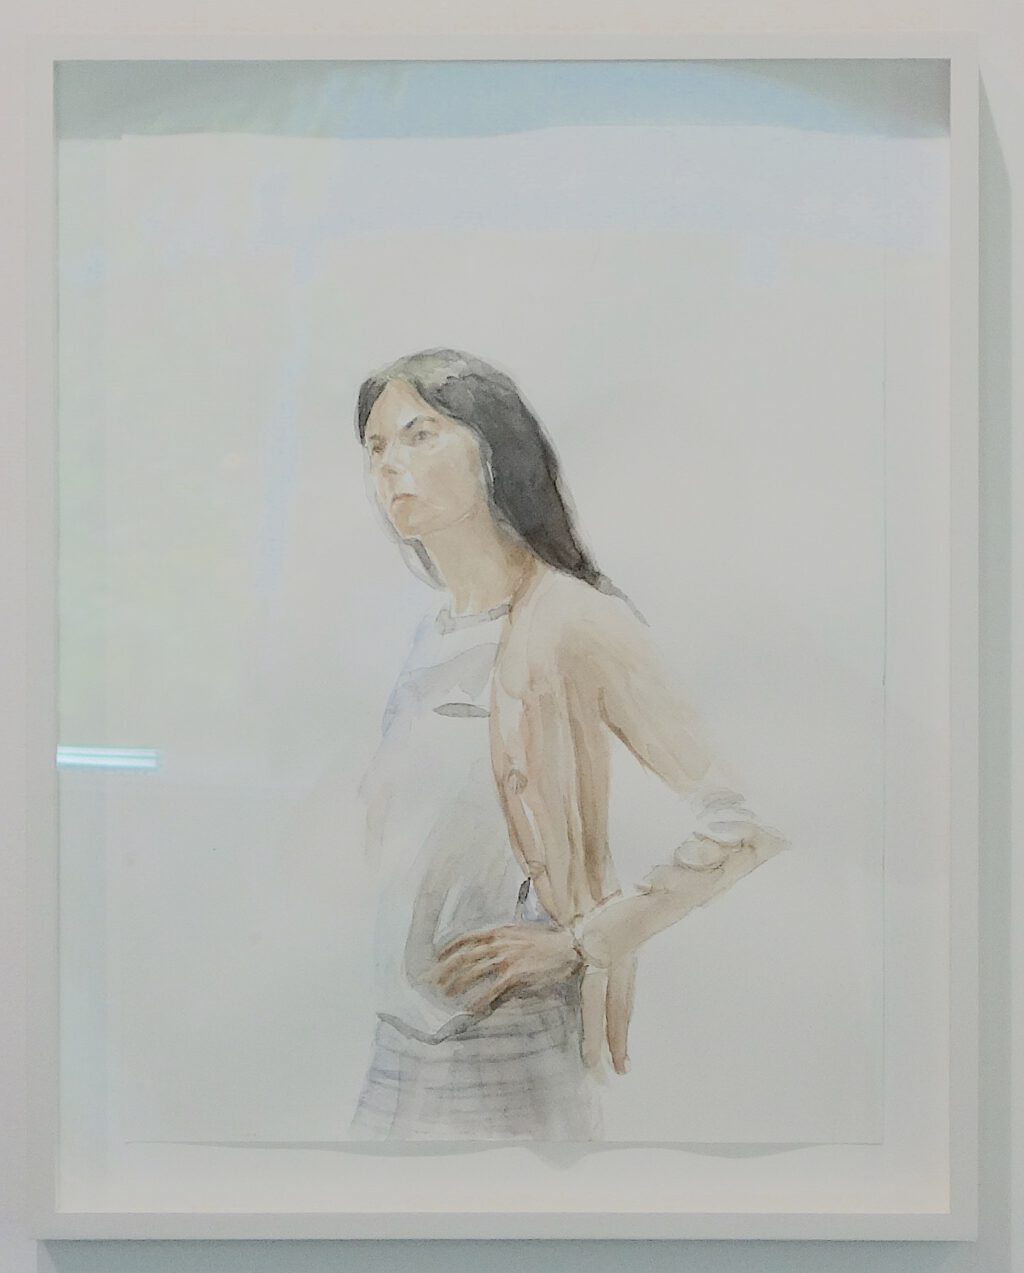 Gillian Wearing Self Portrait January 2022 Watercolor on paper @ REGEN PROJECTS